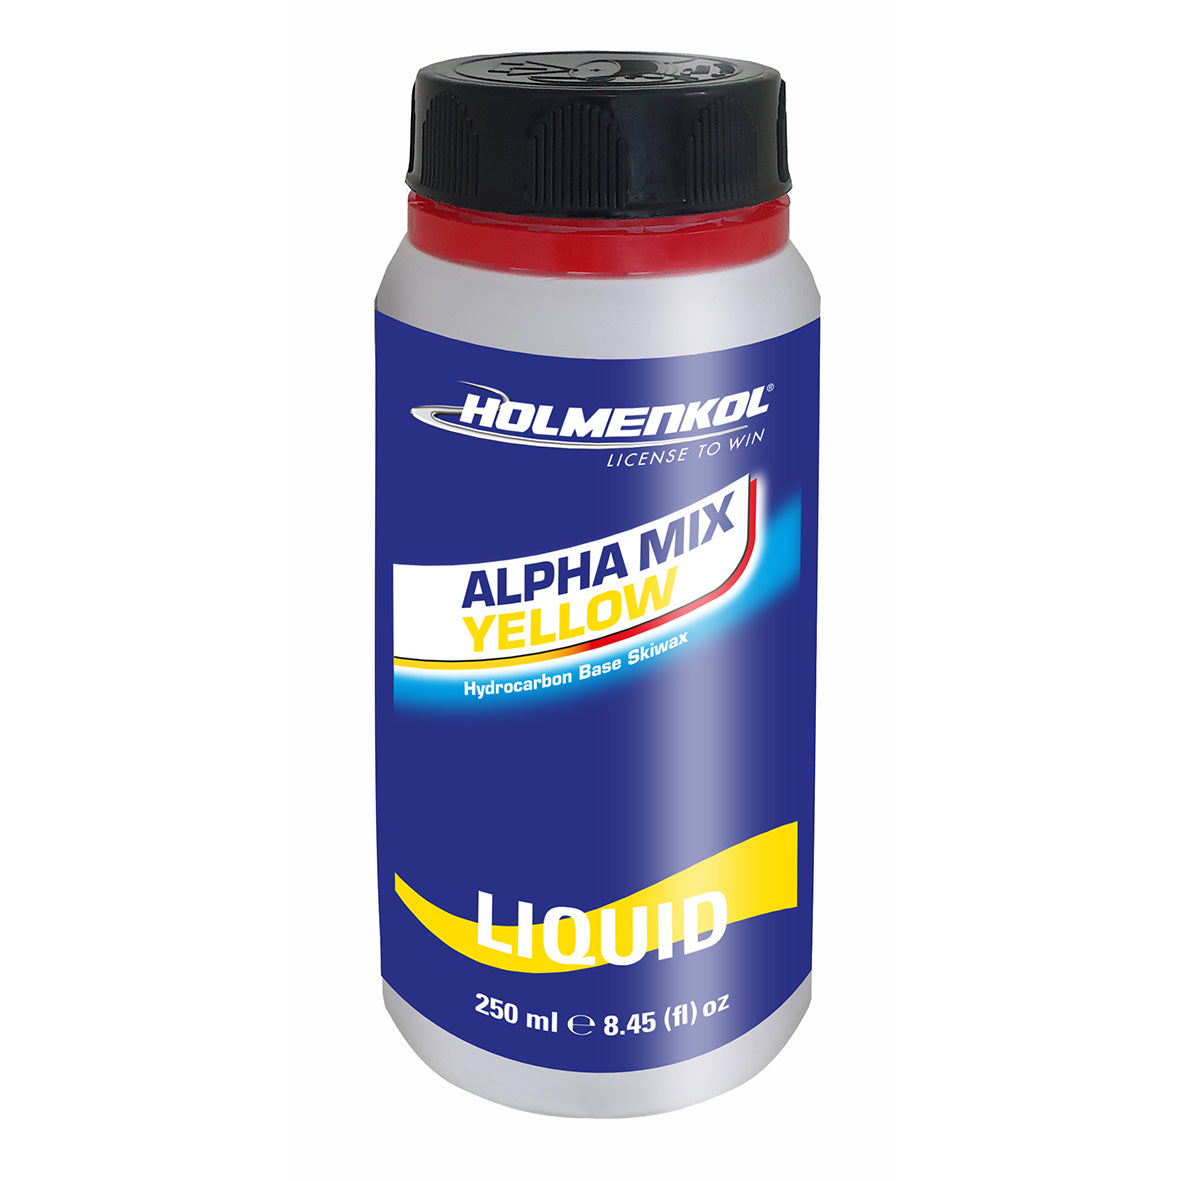 Holmenkol Alpha Mix Yellow liquid  250ml-2